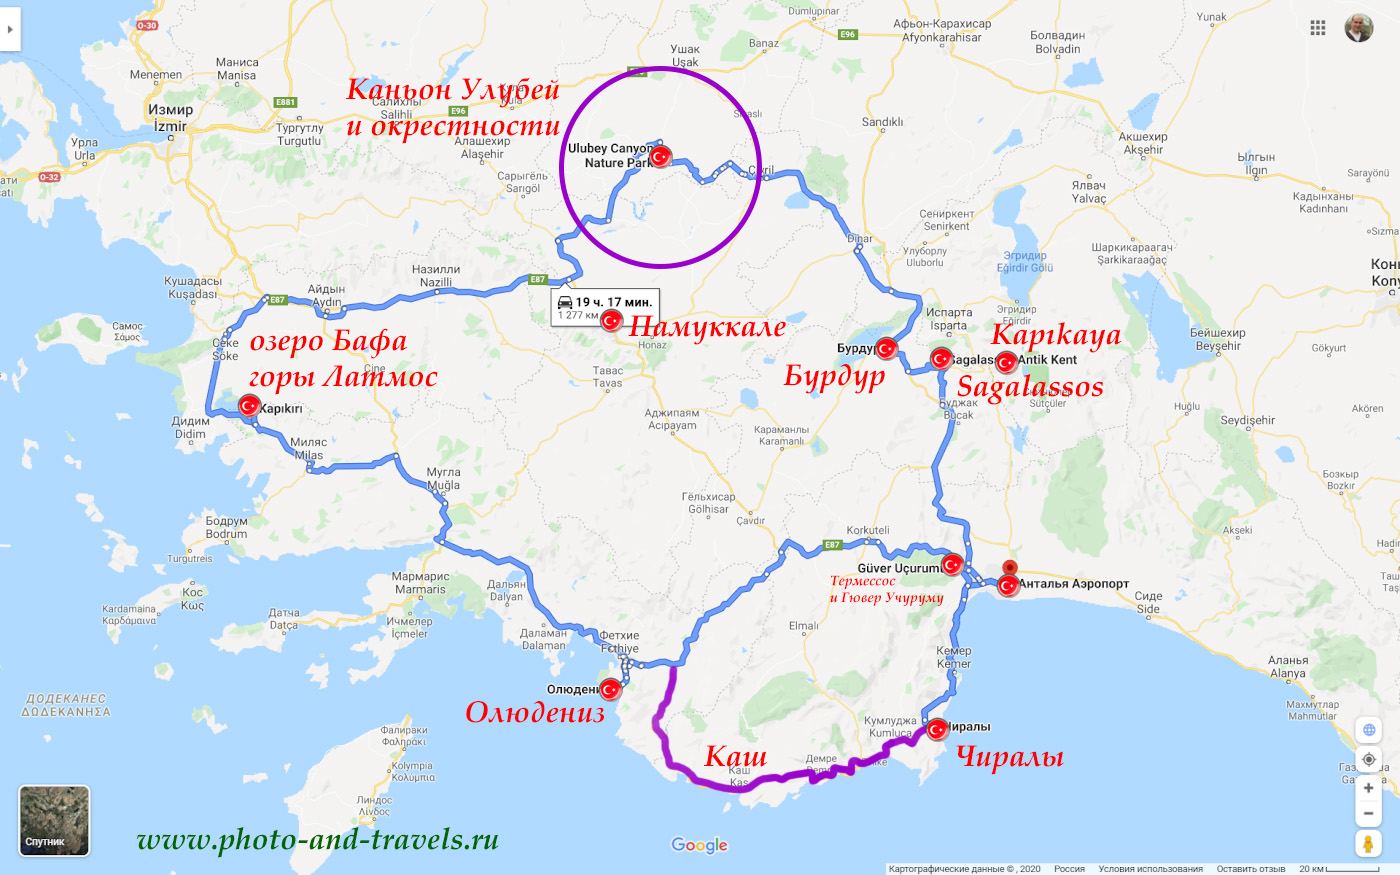 38. Карта маршрута путешествия на машине из Олюдениза, Анталии или Кемера в Памуккале и окрестности.